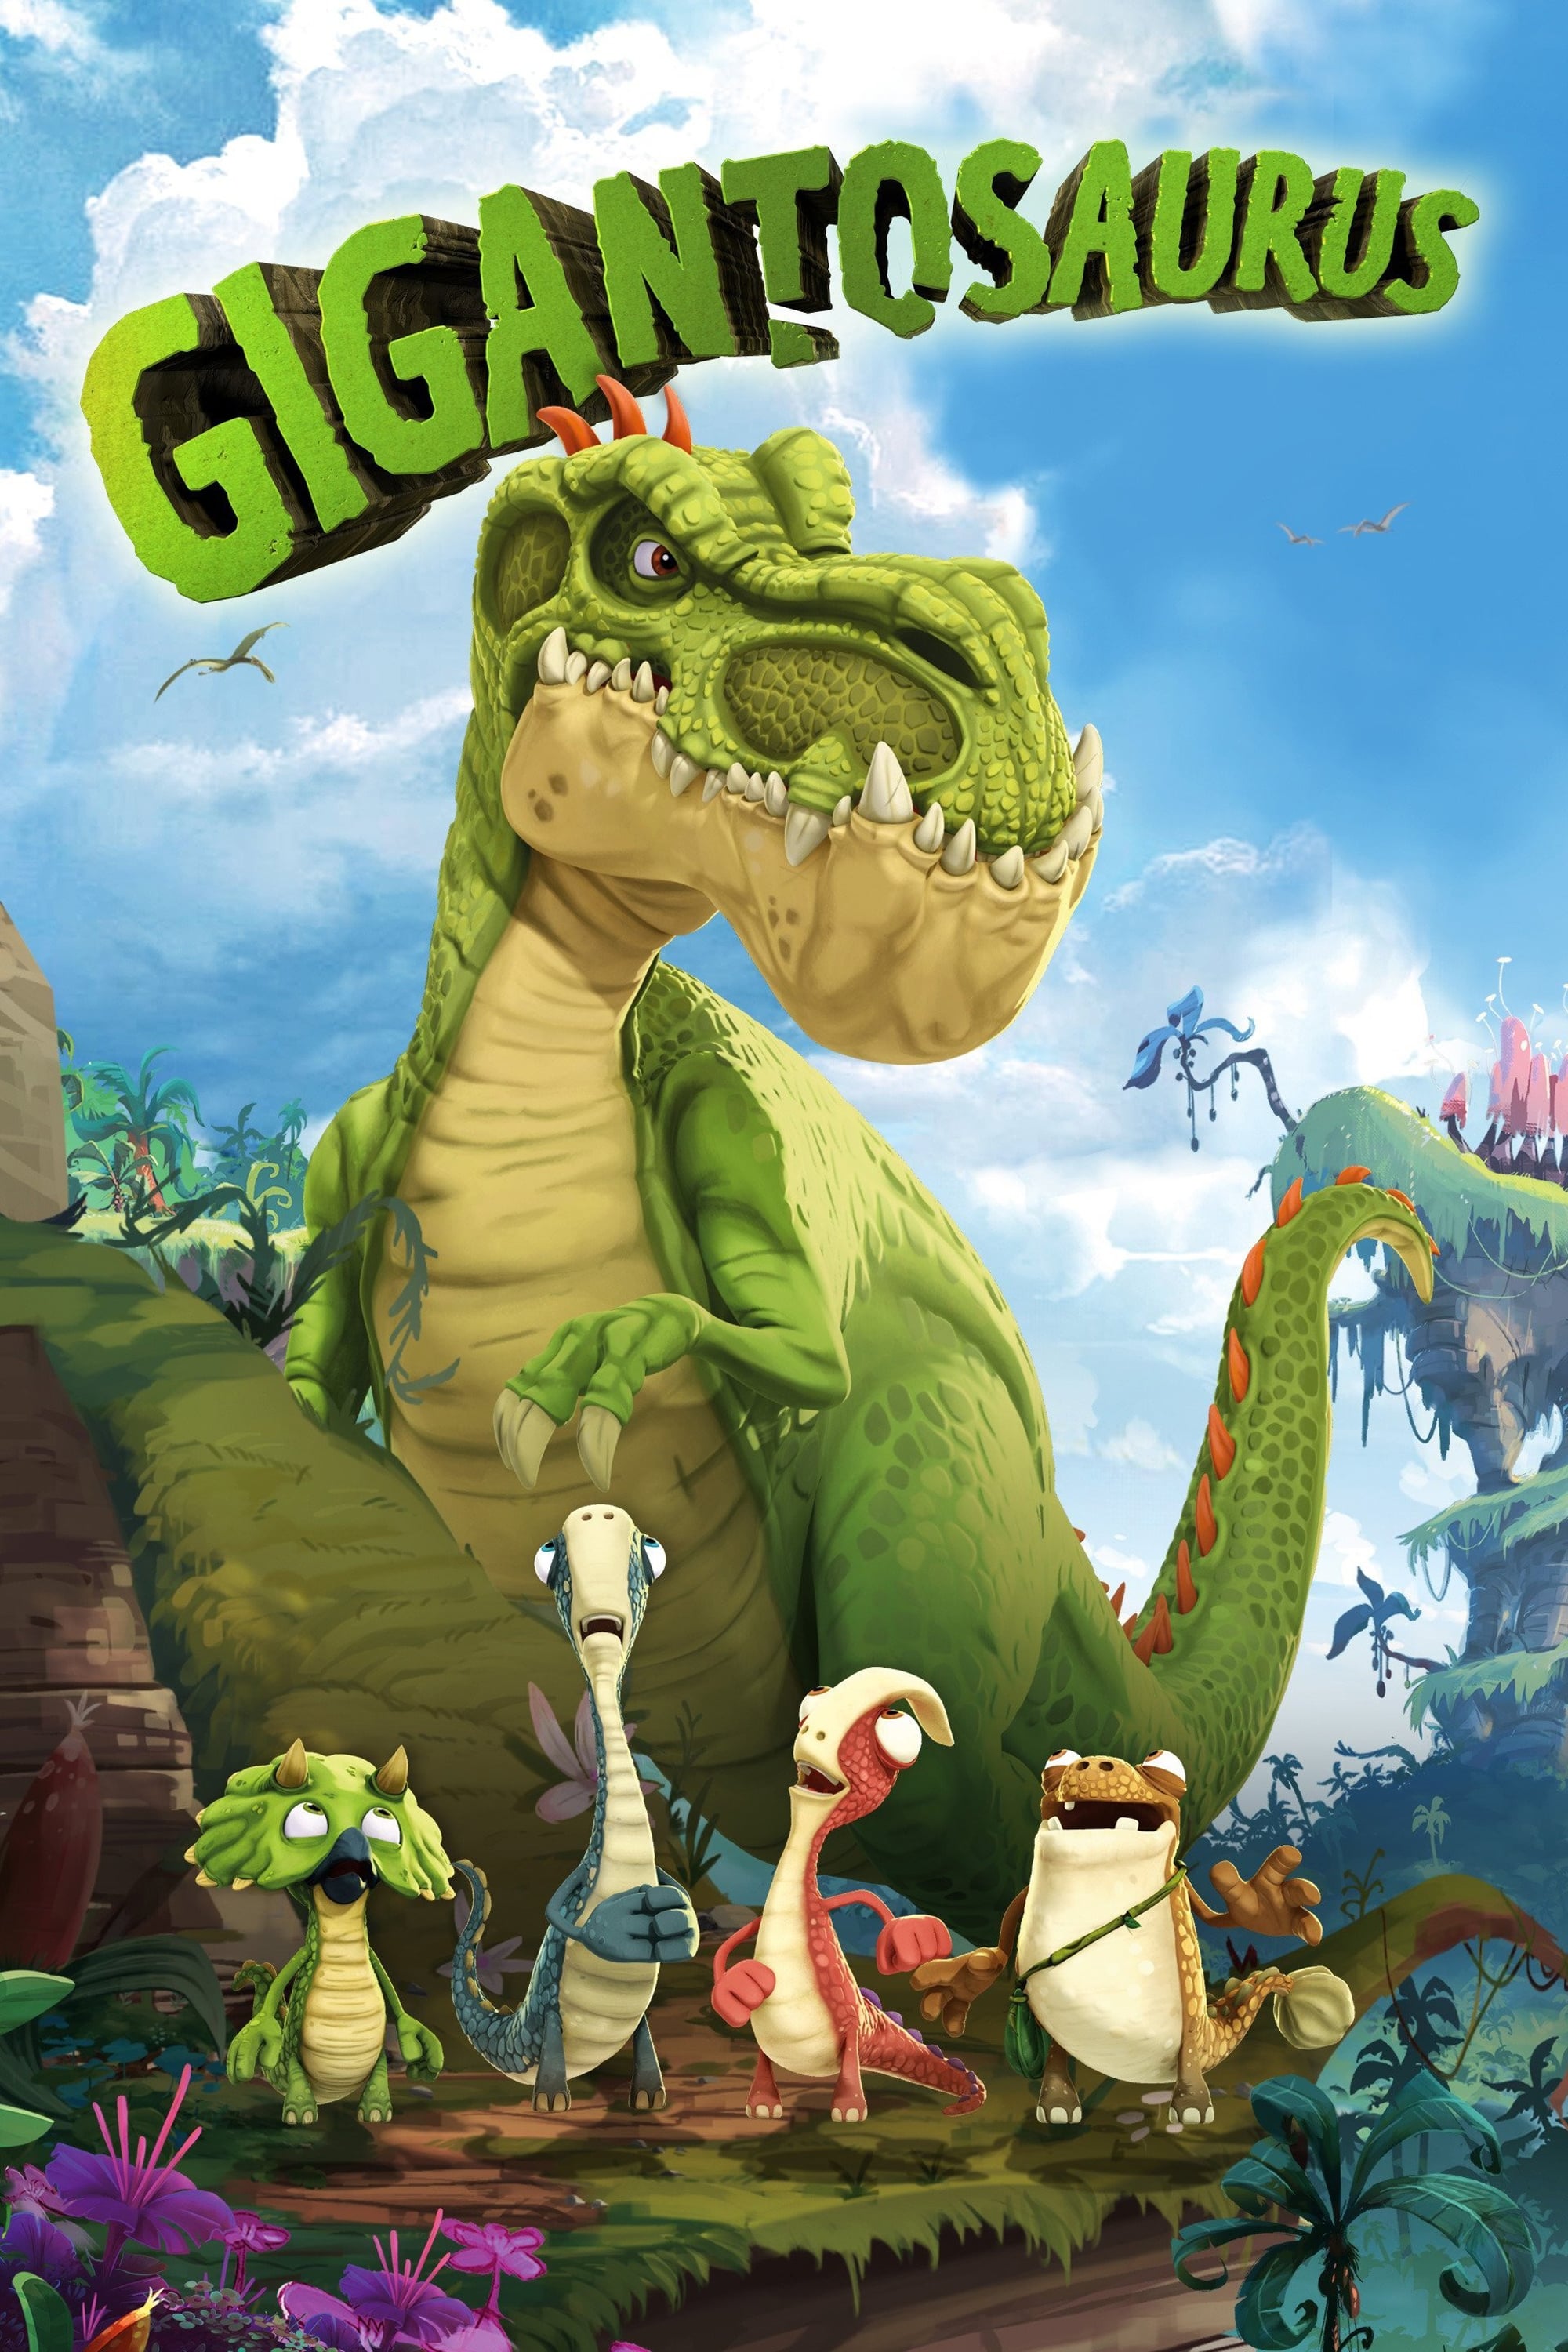 Gigantosaurus TV Shows About Dinosaur